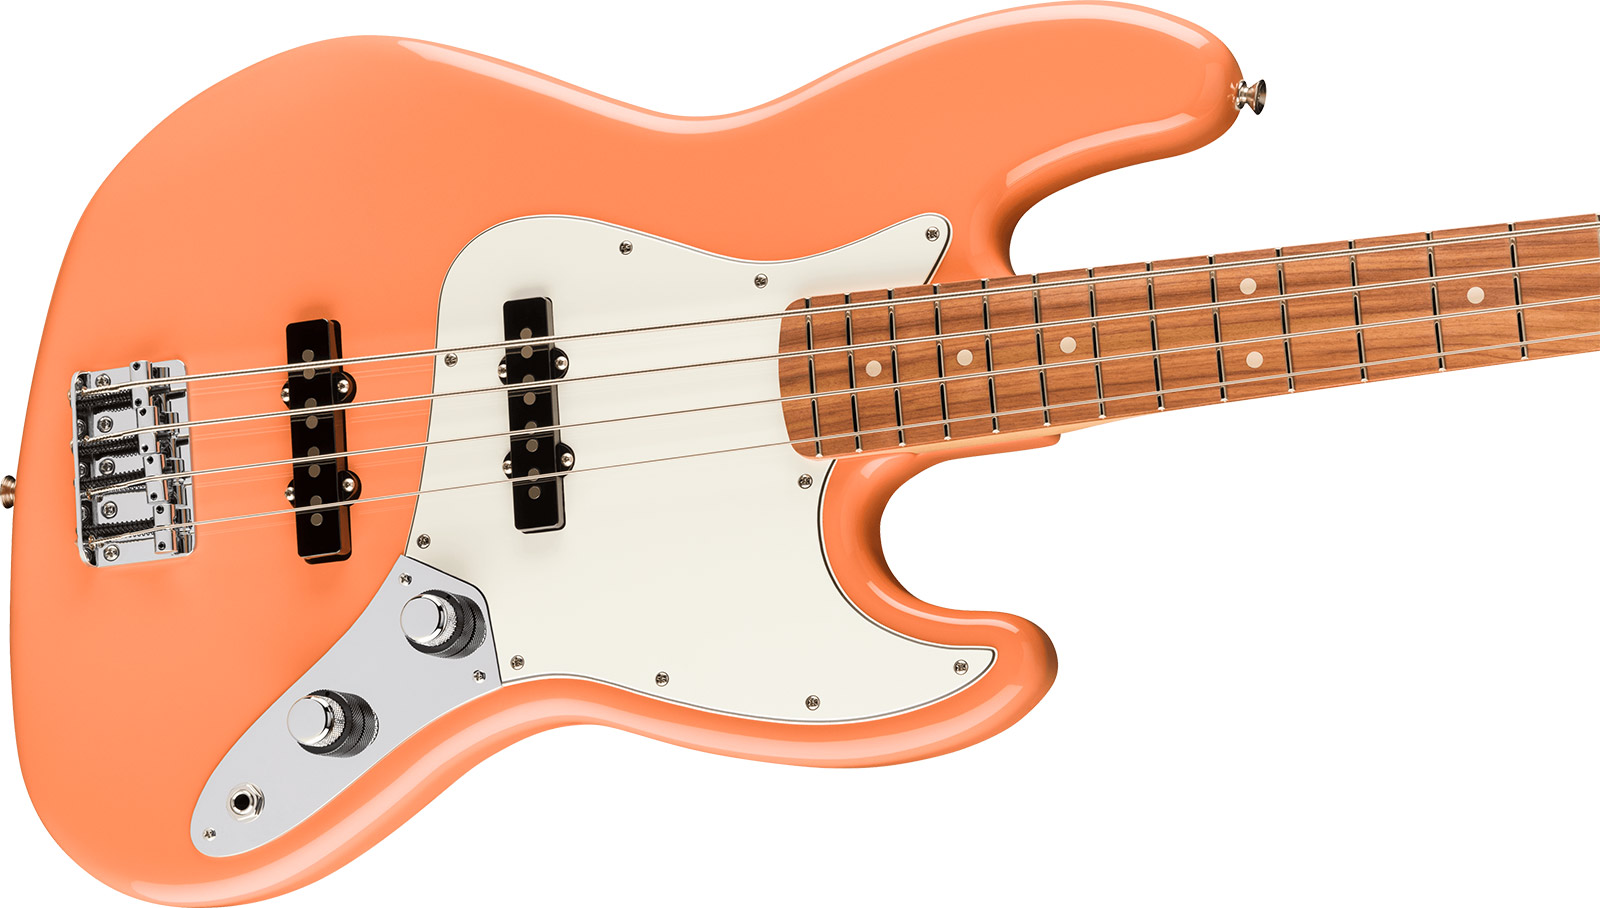 Fender Jazz Bass Player Mex Ltd Pf - Pacific Peach - Bajo eléctrico de cuerpo sólido - Variation 2